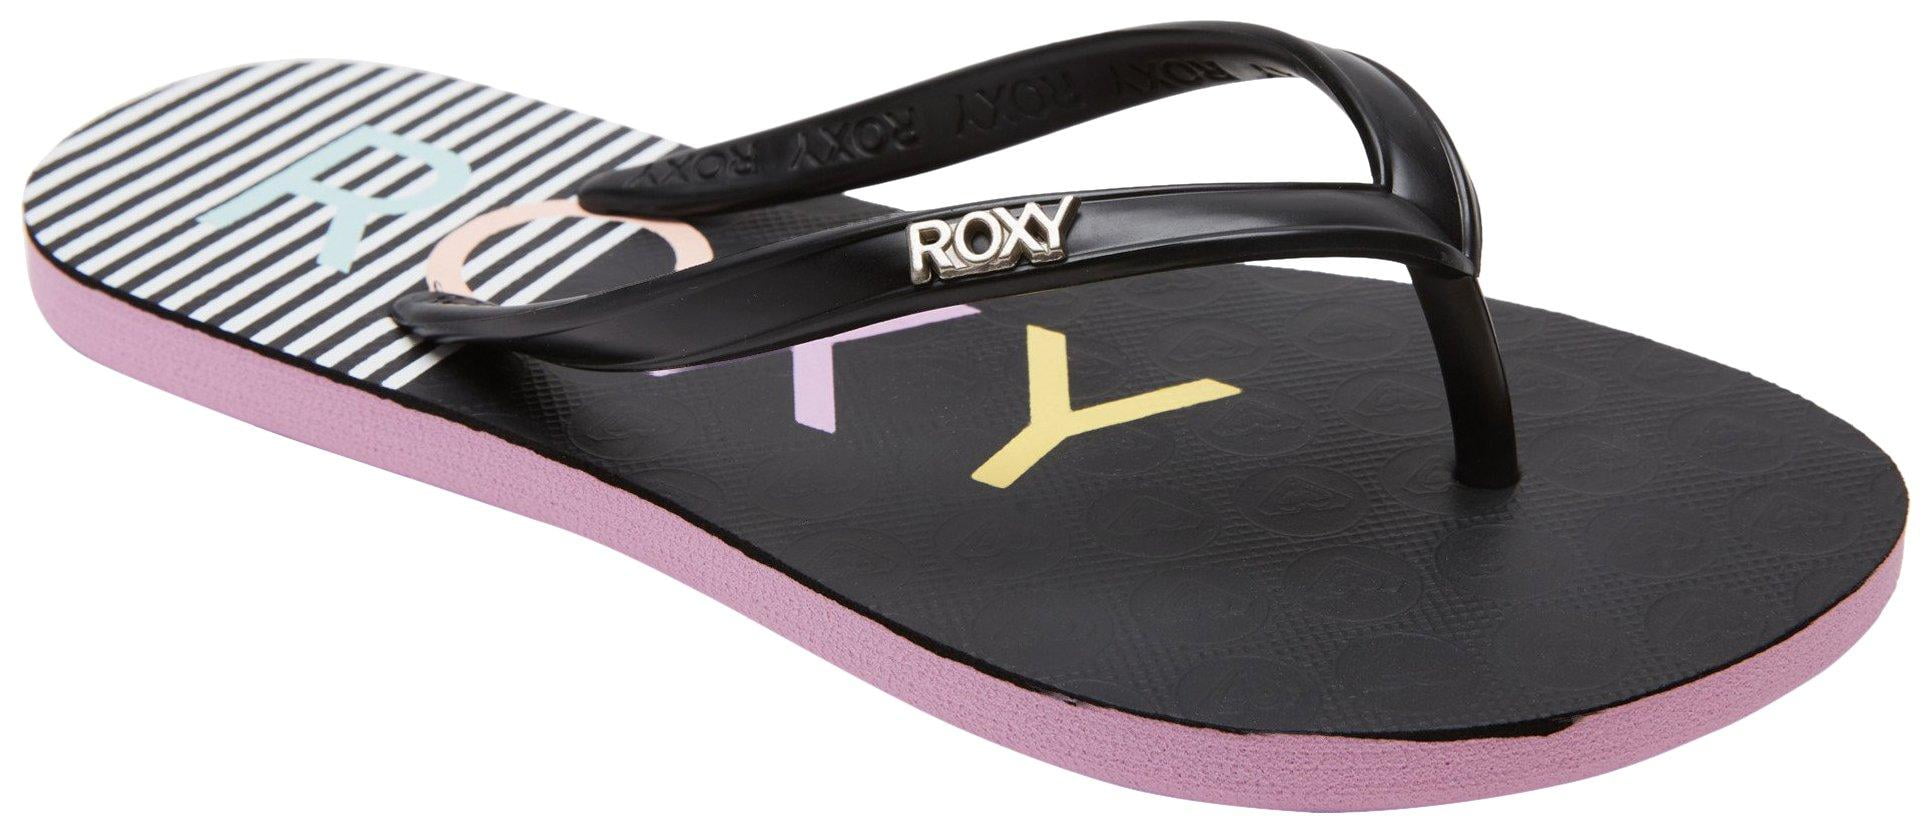 Black New Roxy Girl's Viva V Sandal 